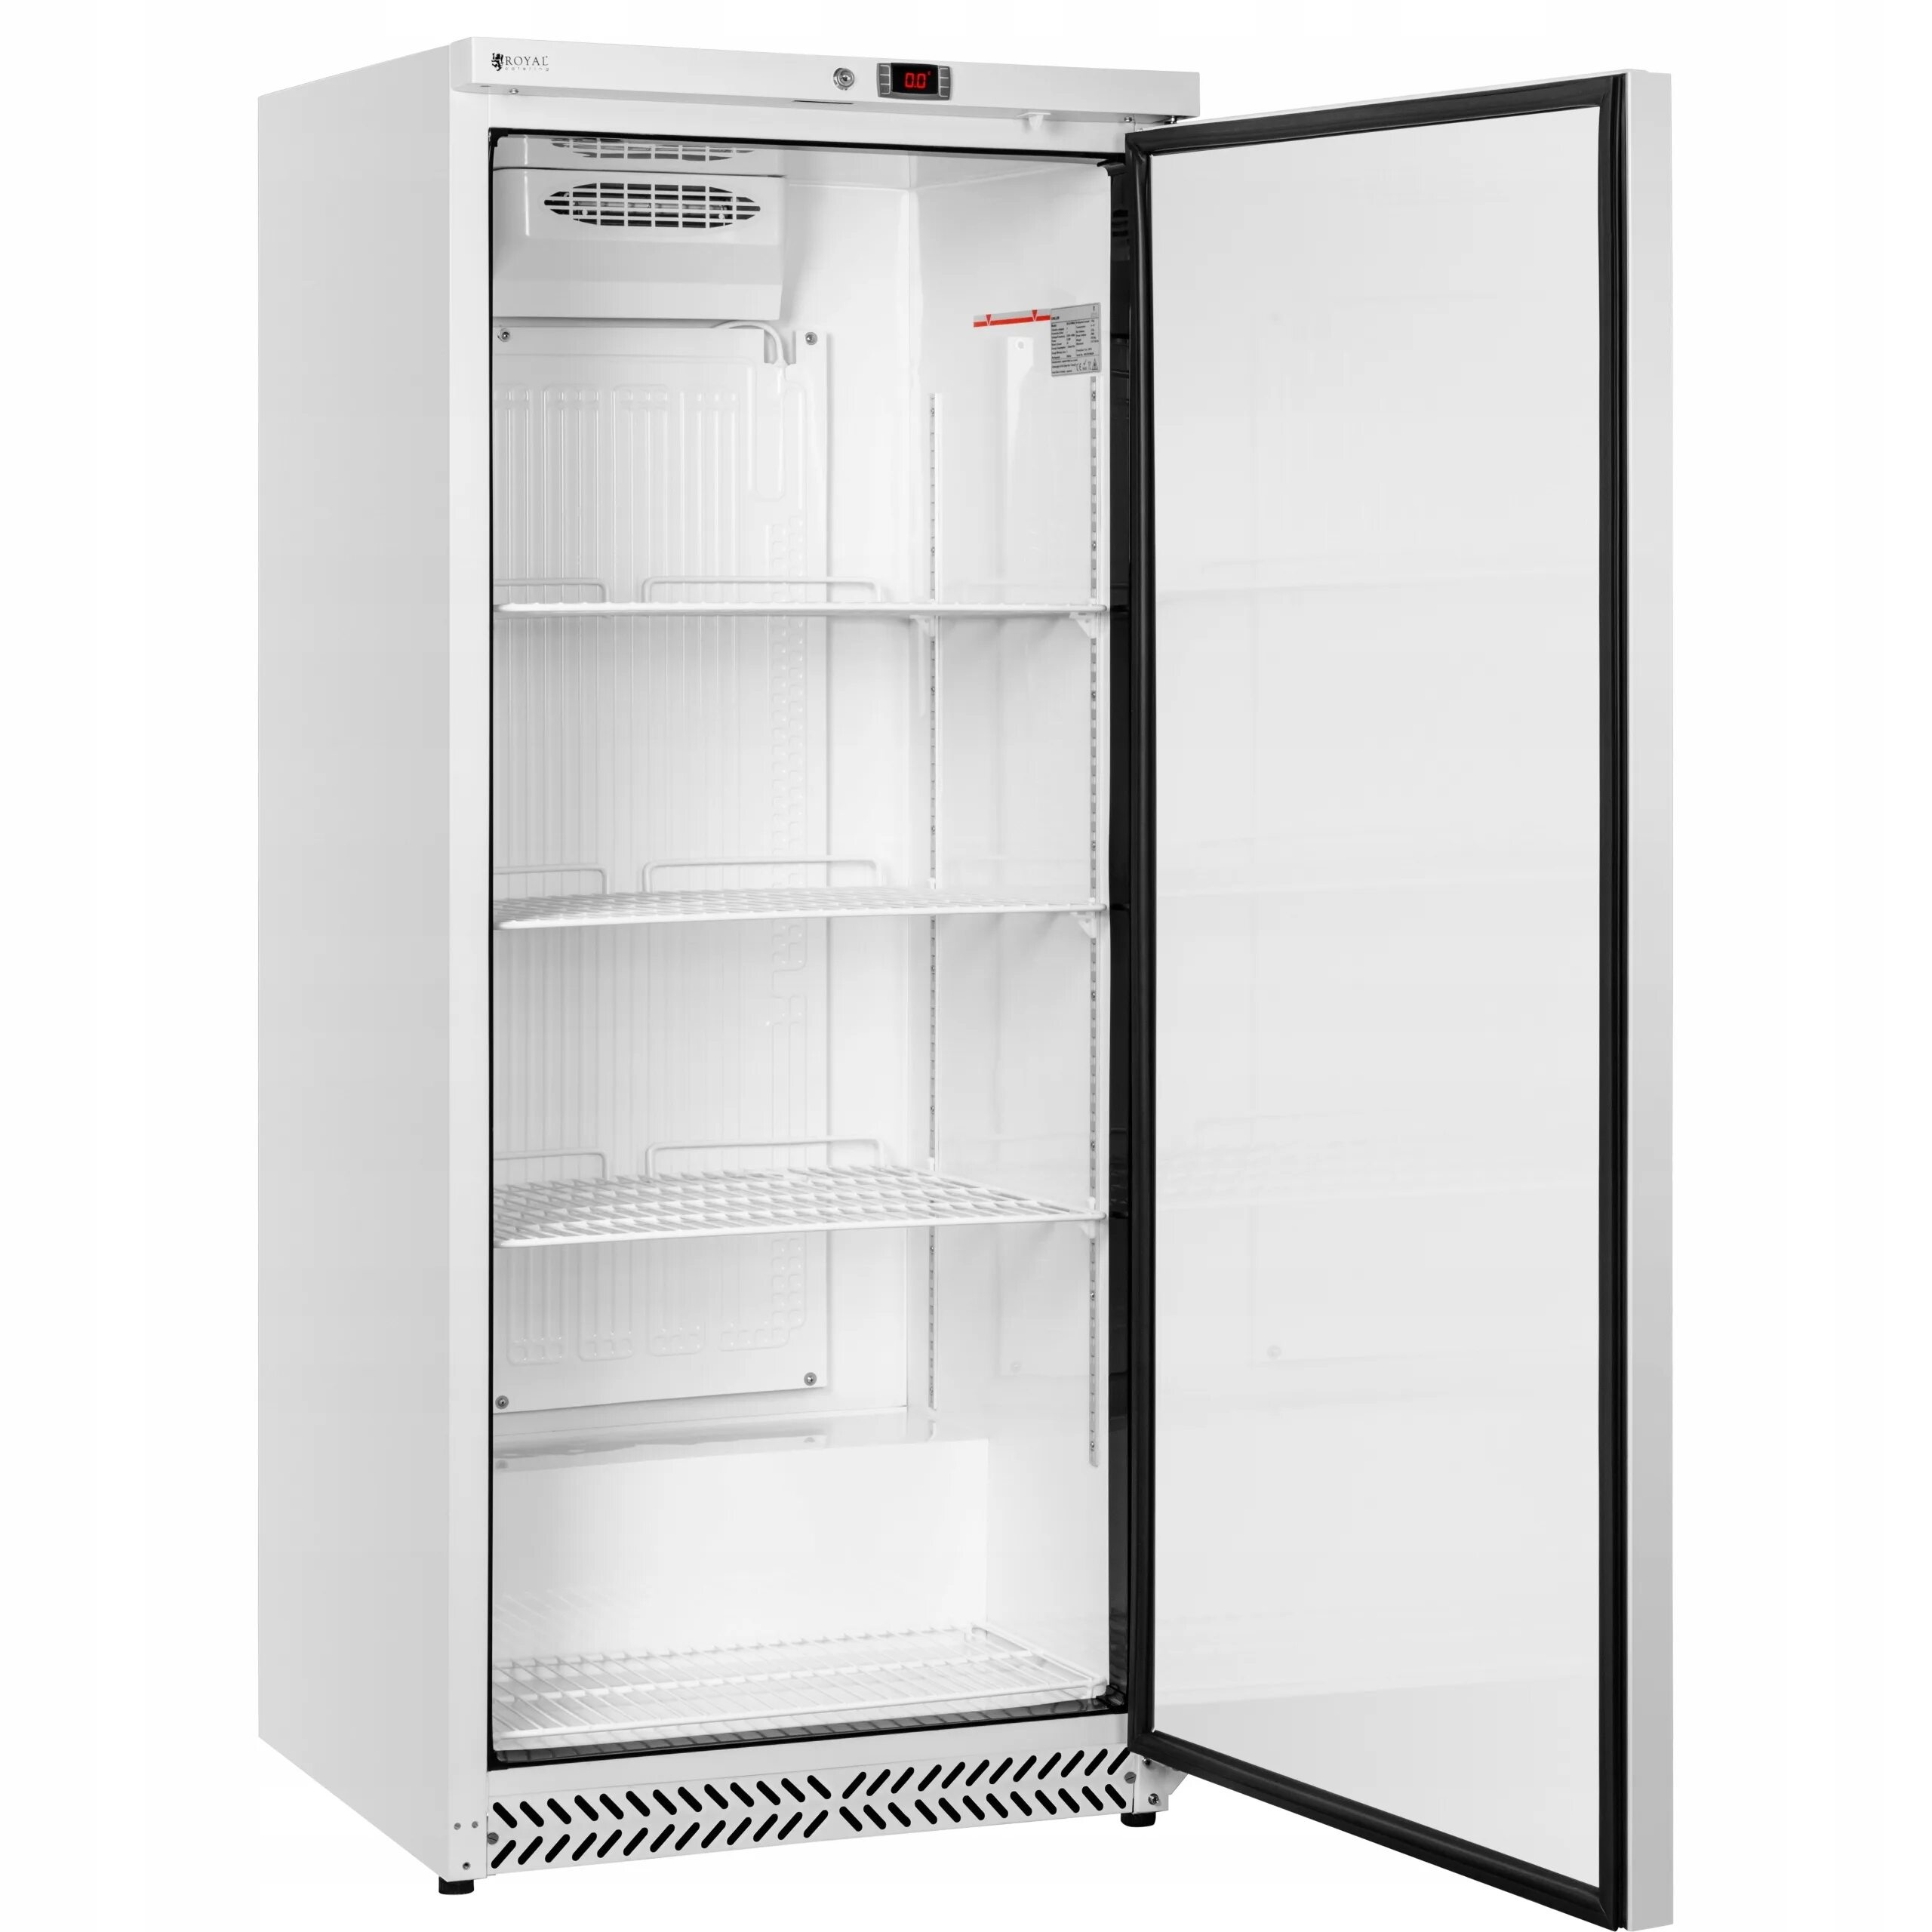 Шкаф холодильный 1 10. Холодильный шкаф Sline - 350. Холодильный шкаф s-600. Холодильный шкаф Geco g18. Шкаф холодильный ШКХ-100*.